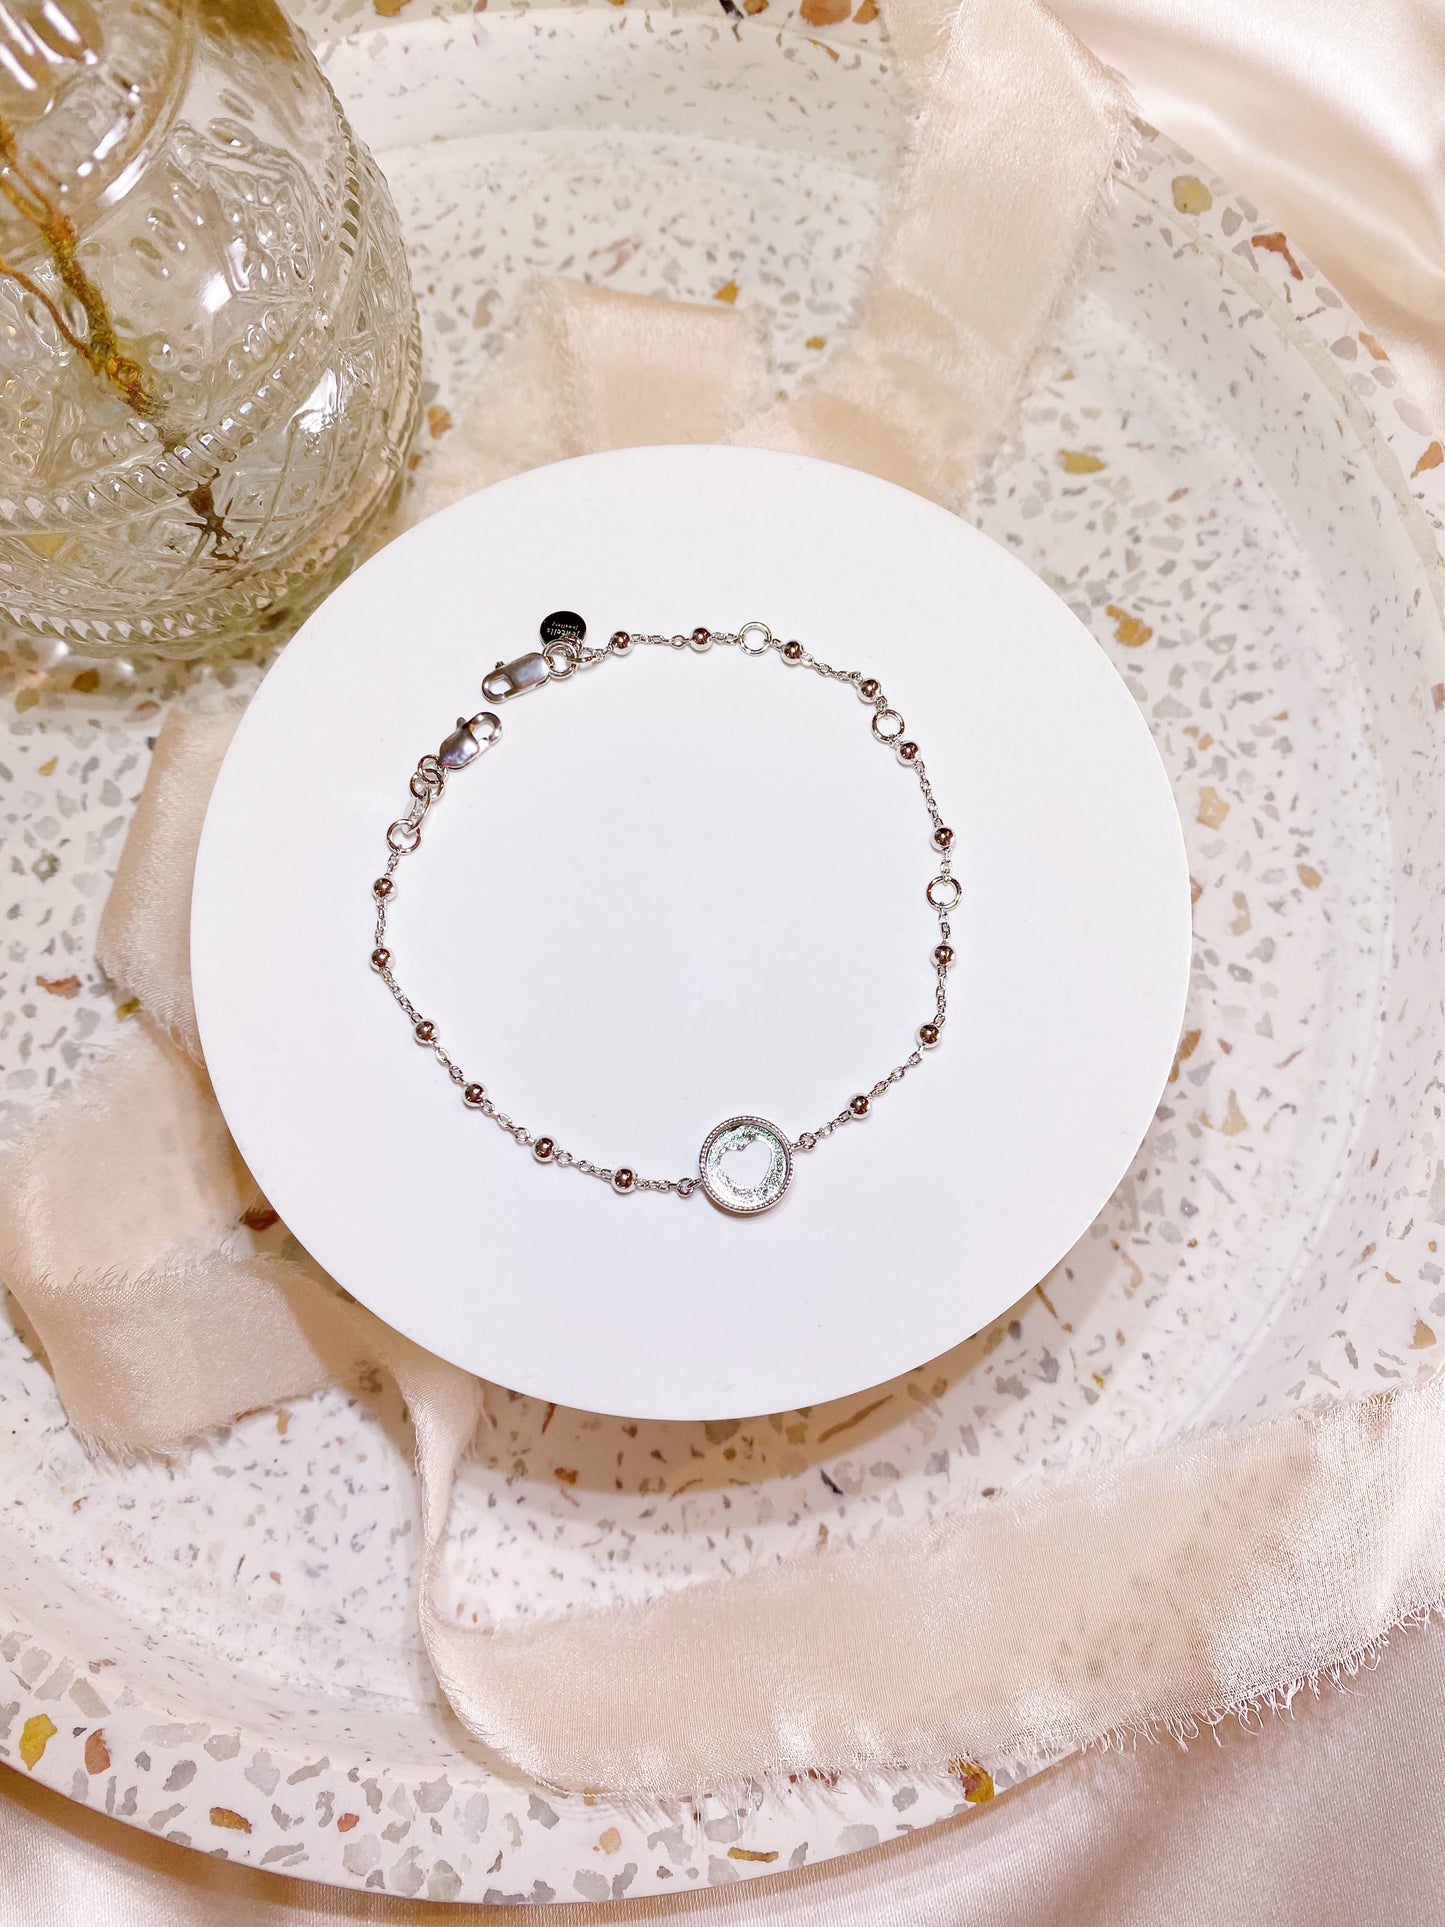 BreastmilkGems™ DIY kit with Gratitude Necklace and Bracelet